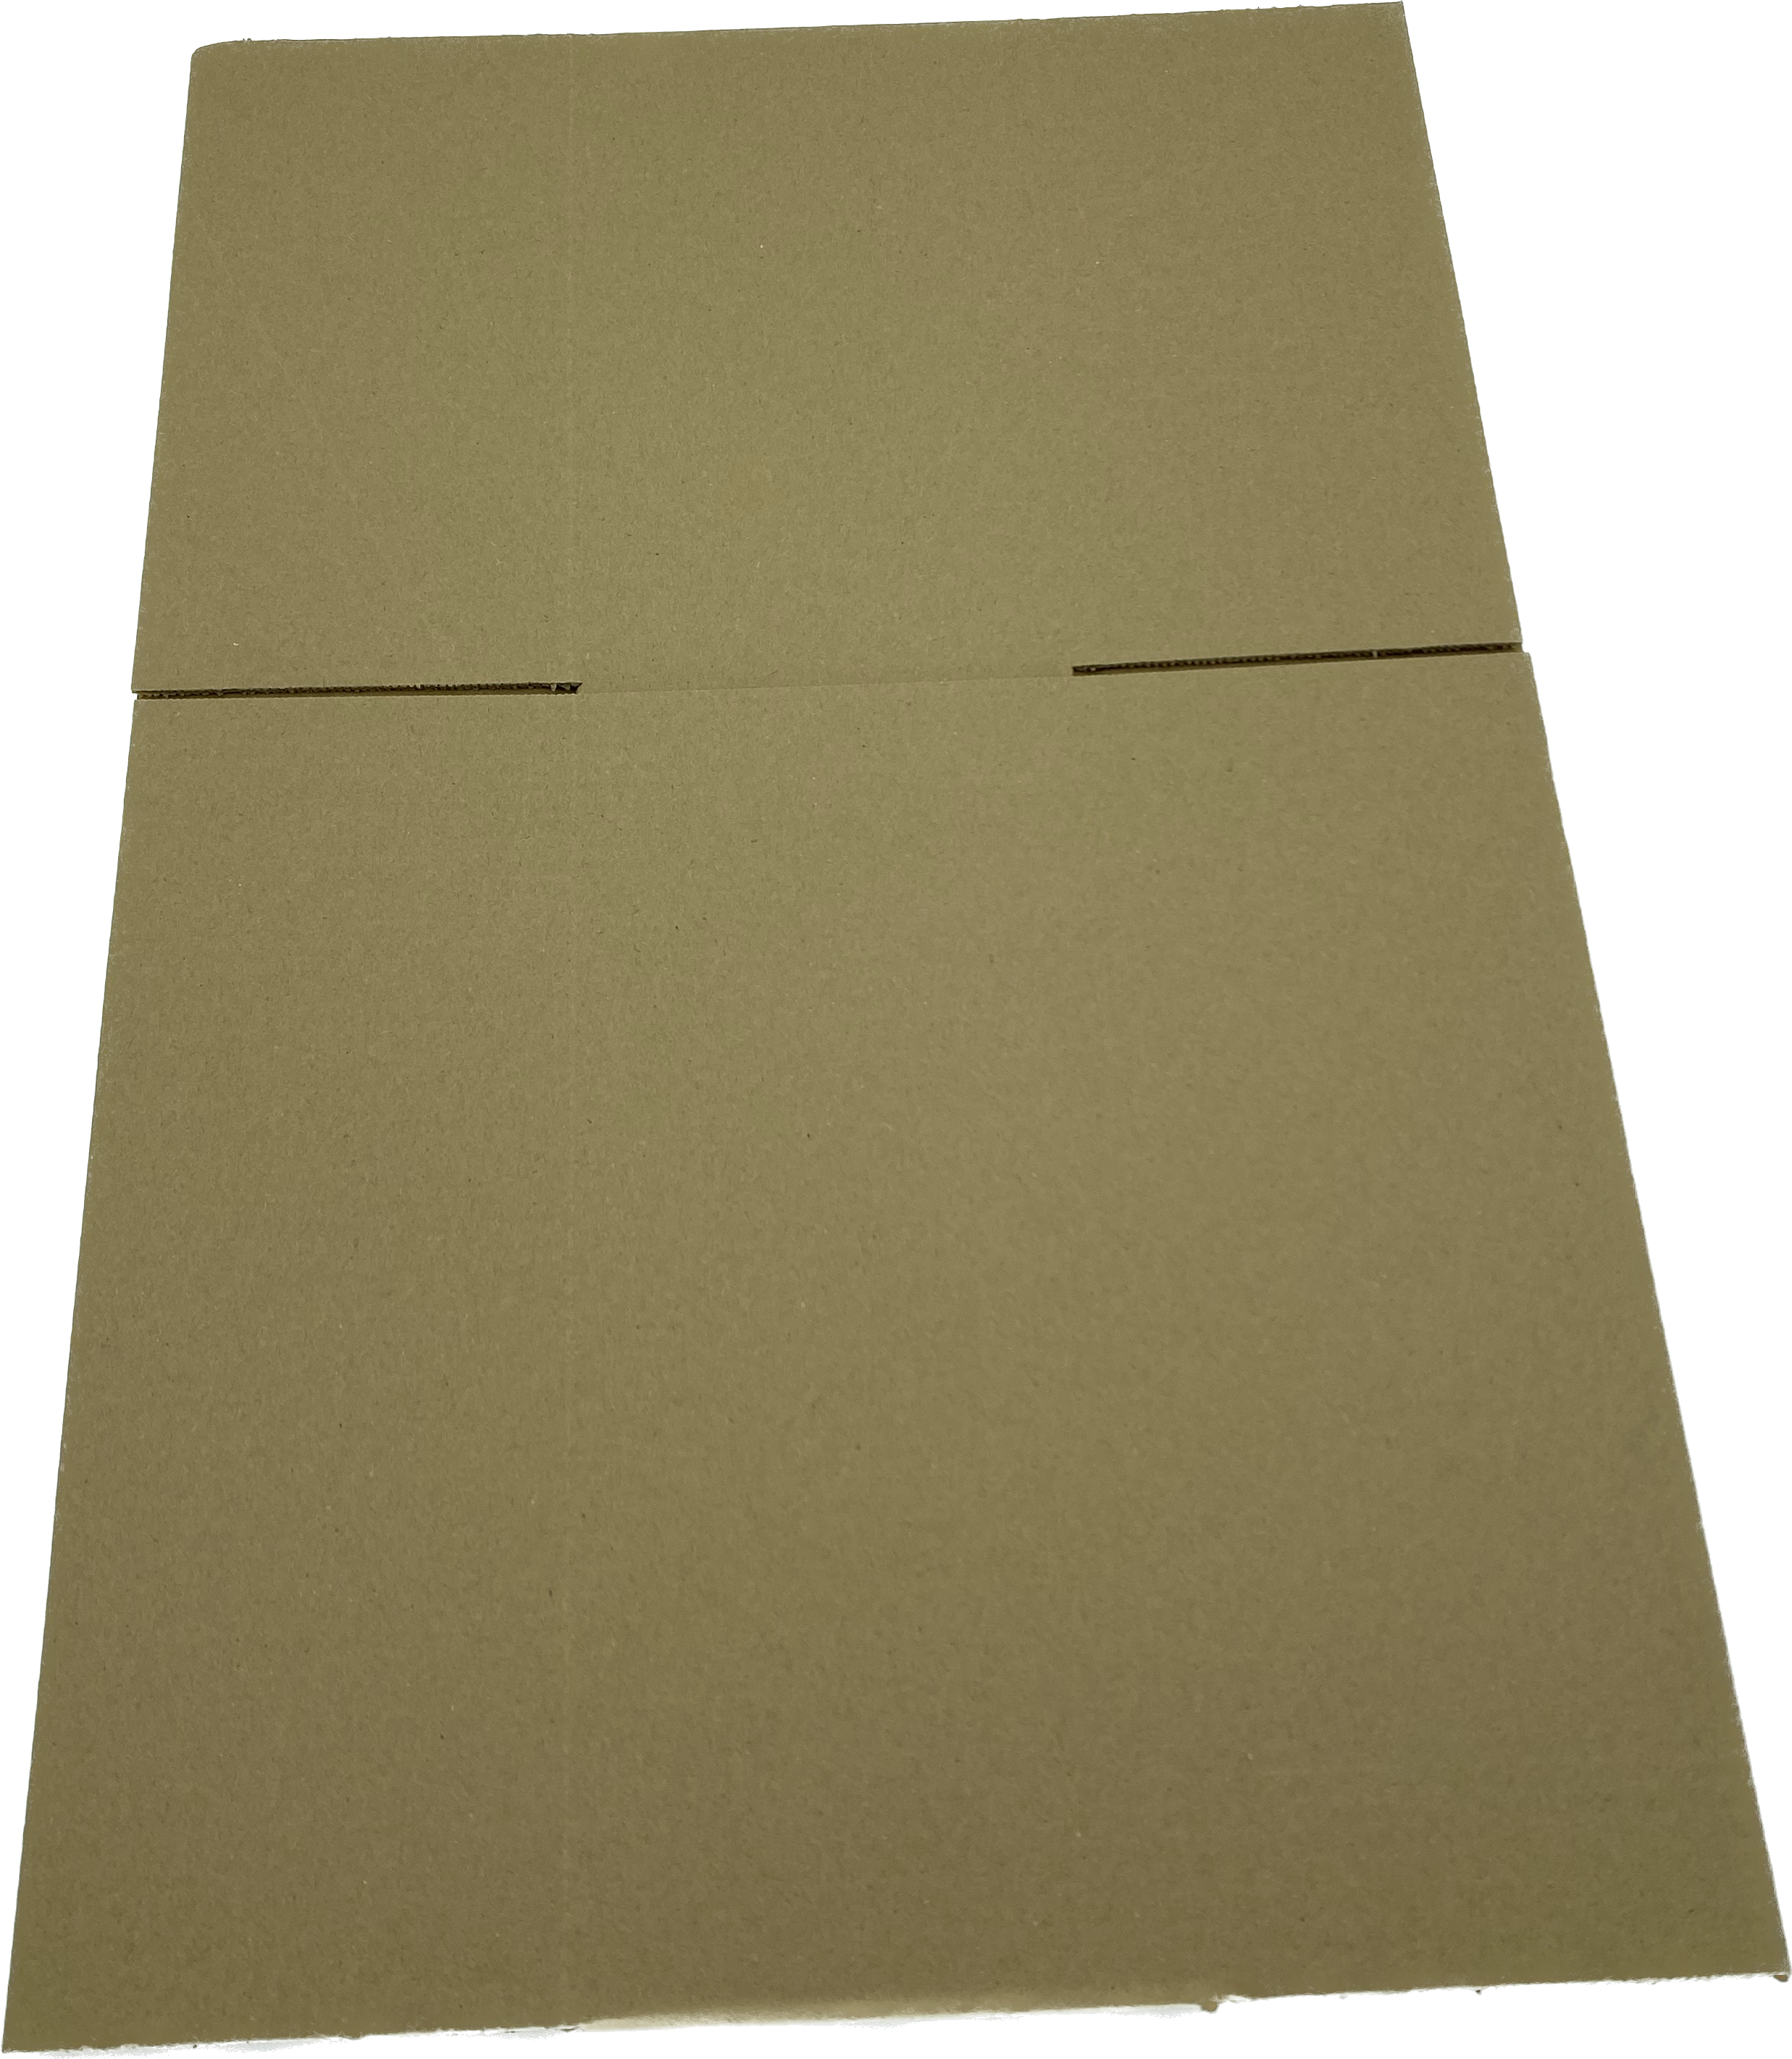 Wellpapp-Faltkarton, 350 x 250 x 150mm, 1.20B, 0201